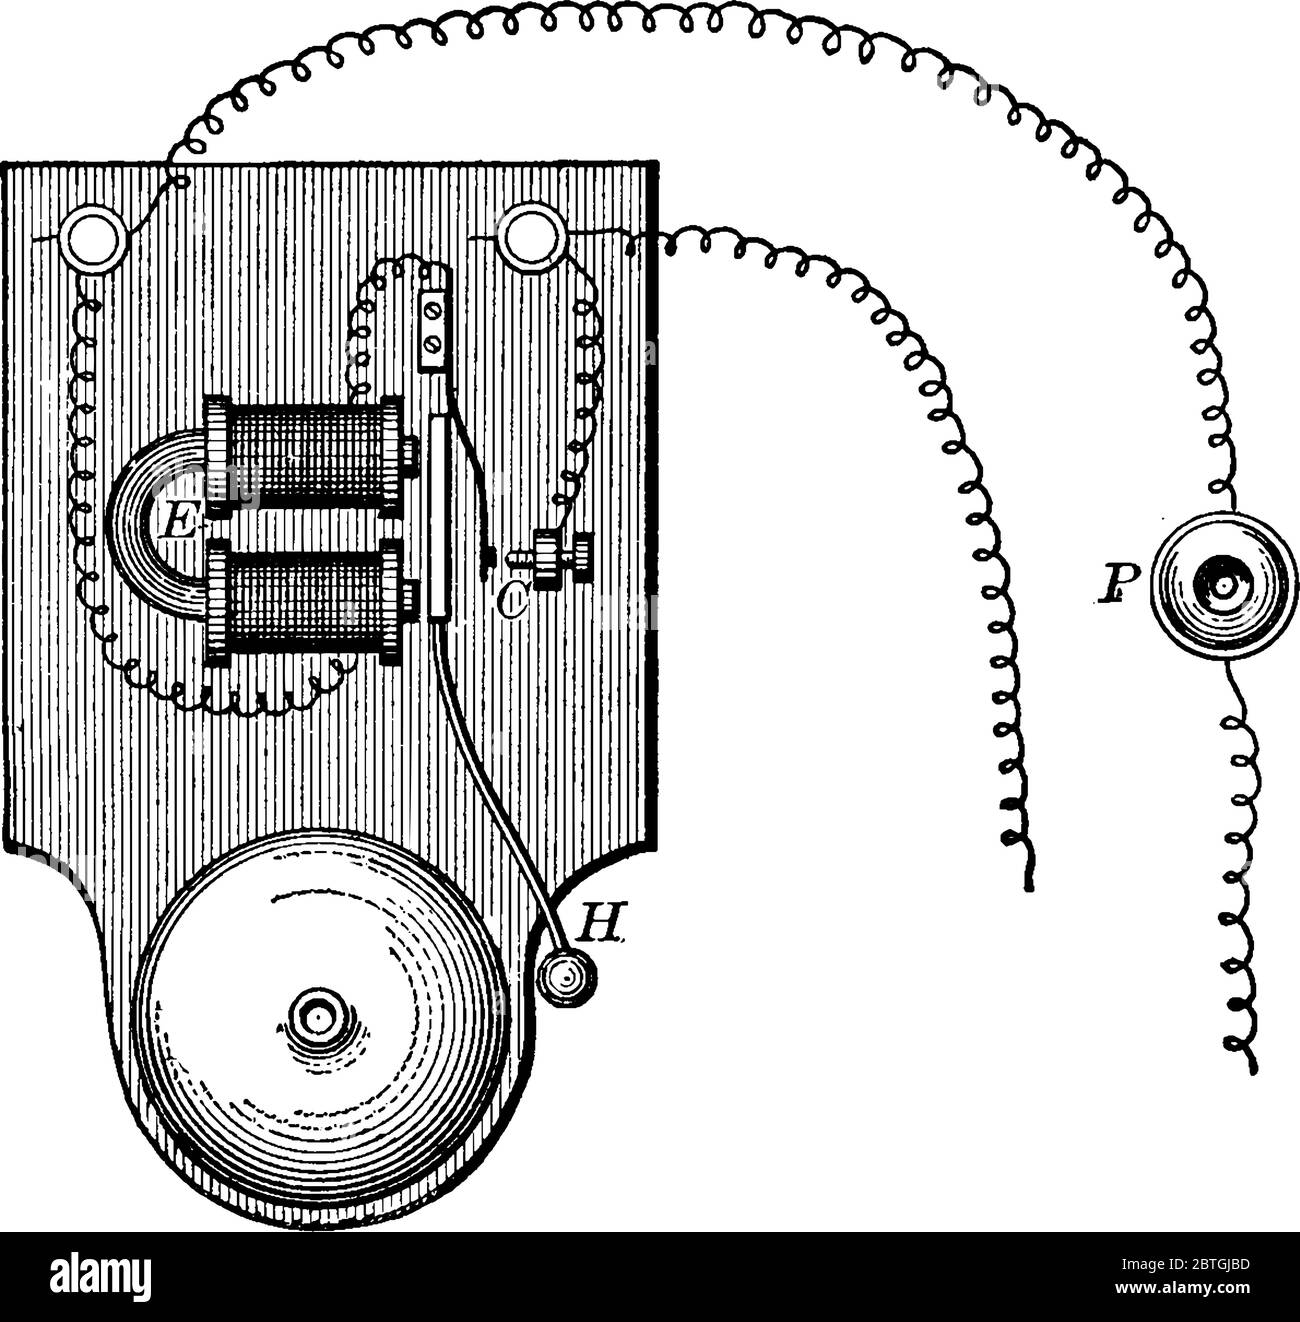 Eine typische Darstellung eines Elektromotors, der aus einem Elektromagneten, Eund einem vibrierenden Anker besteht, der einen Hammer, H, trägt, der auf ein Be trifft Stock Vektor